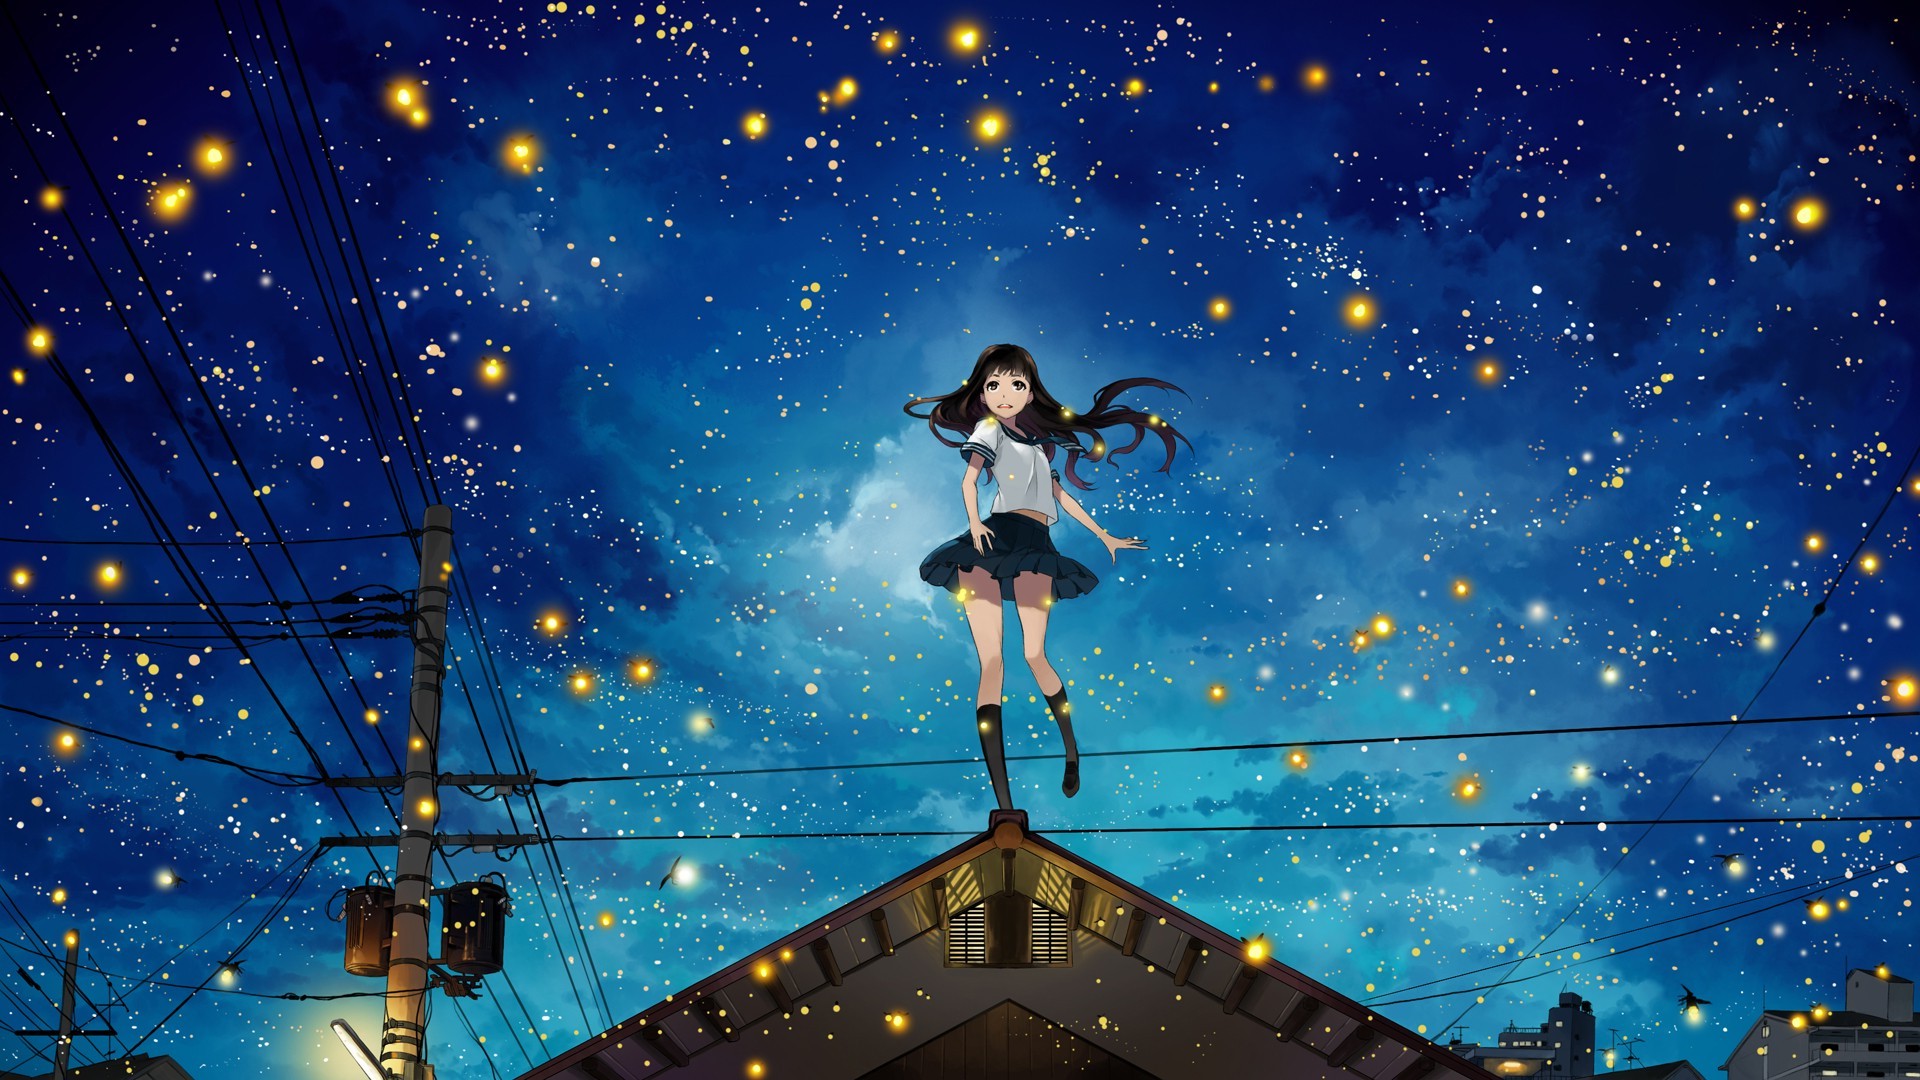 anime stars wallpaper,cielo,espacio,noche,estrella,universo